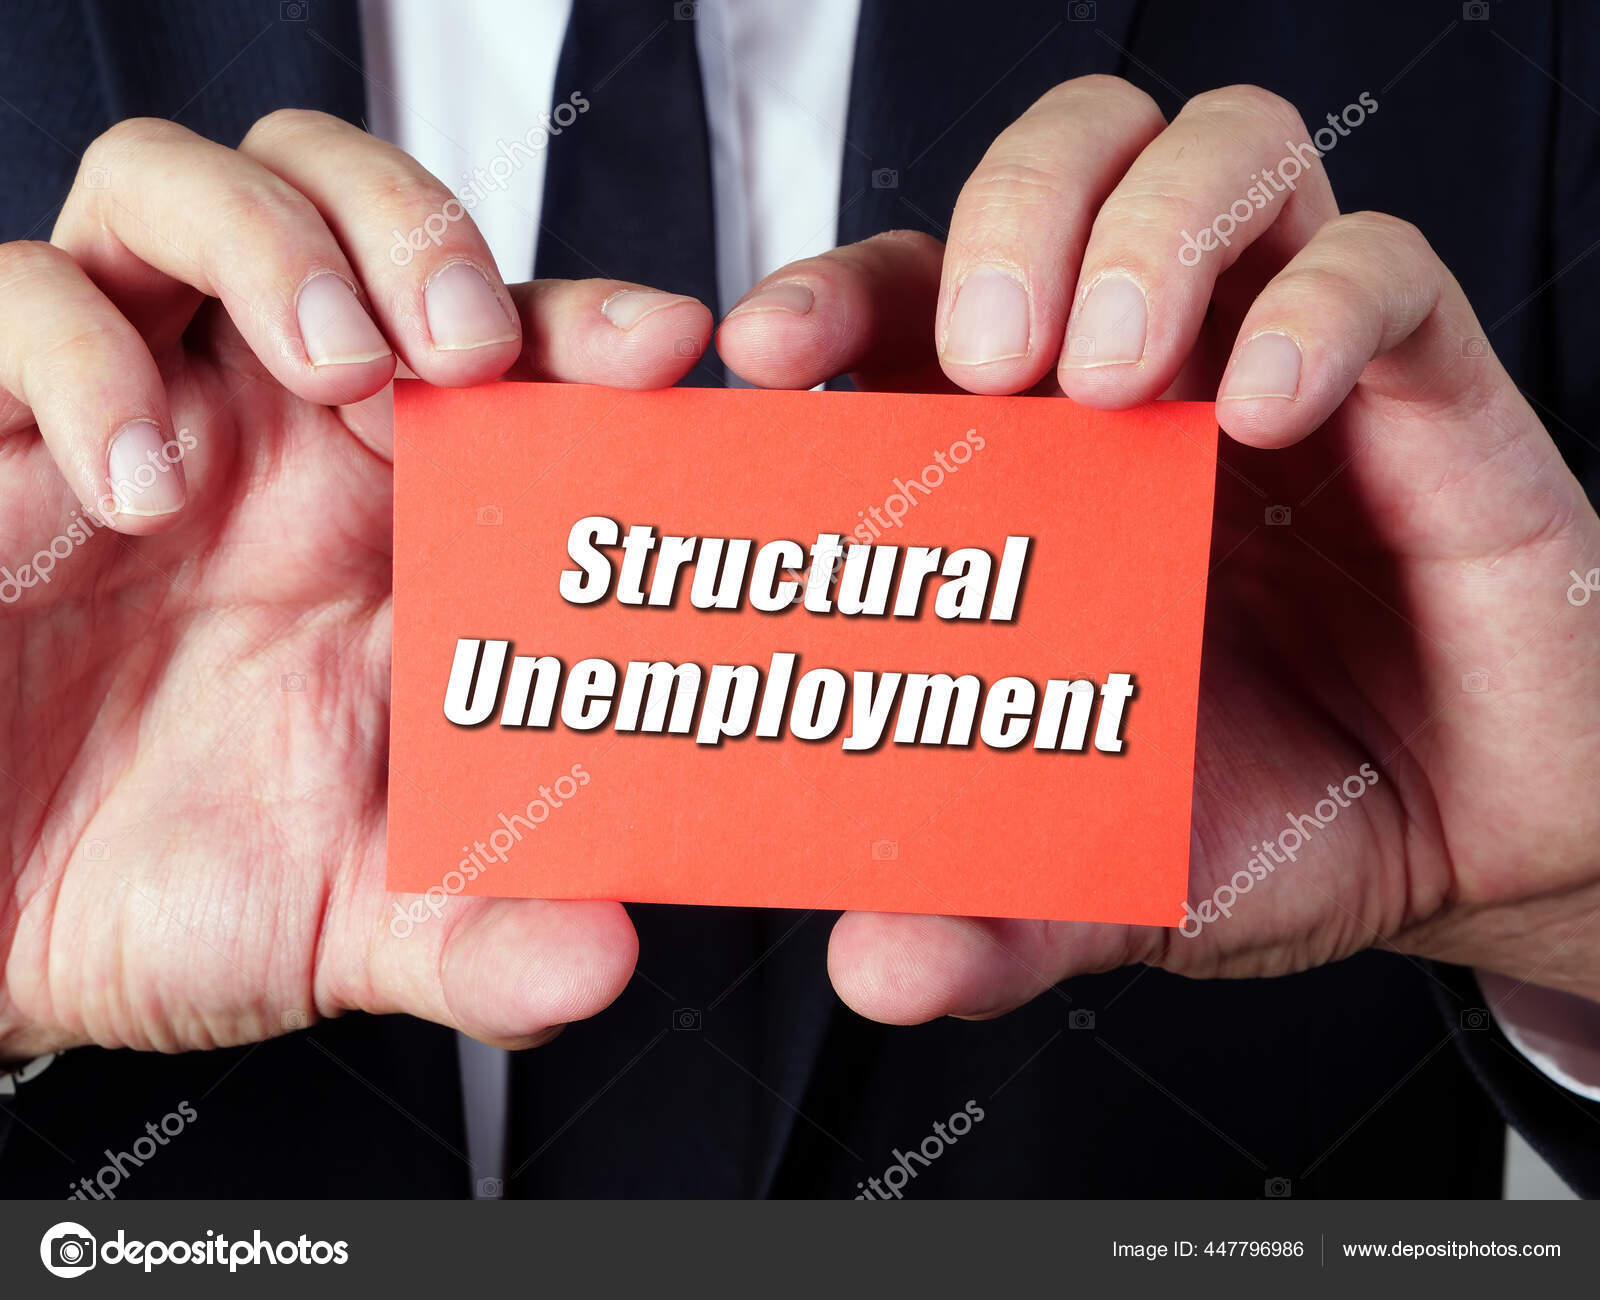 структурная безработица, определение, примеры, экономика